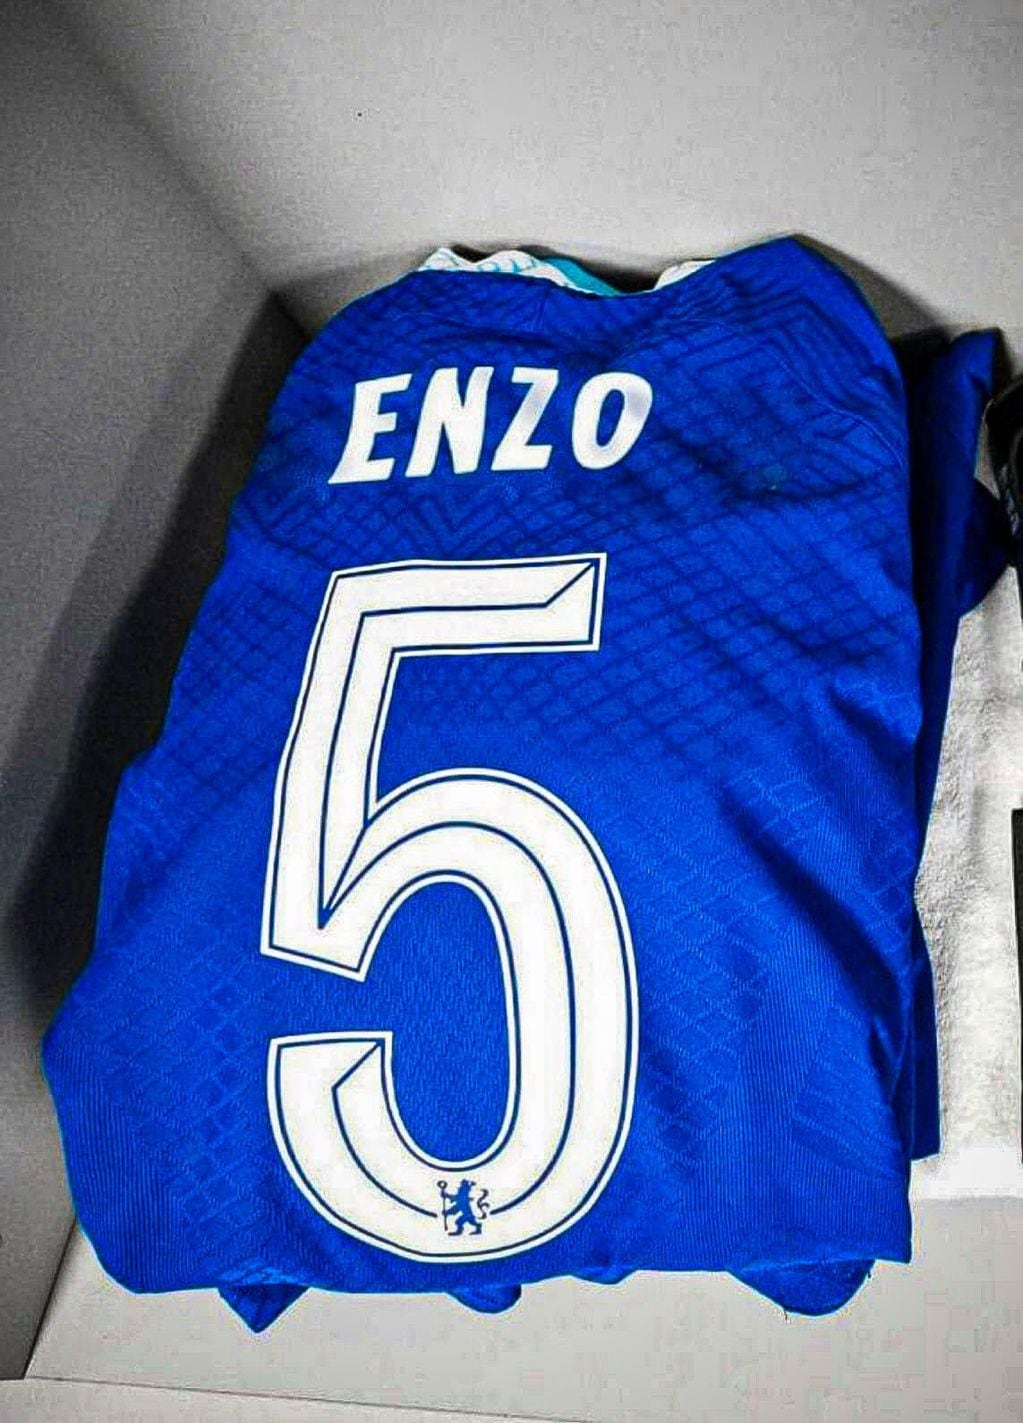 La camiseta de Enzo